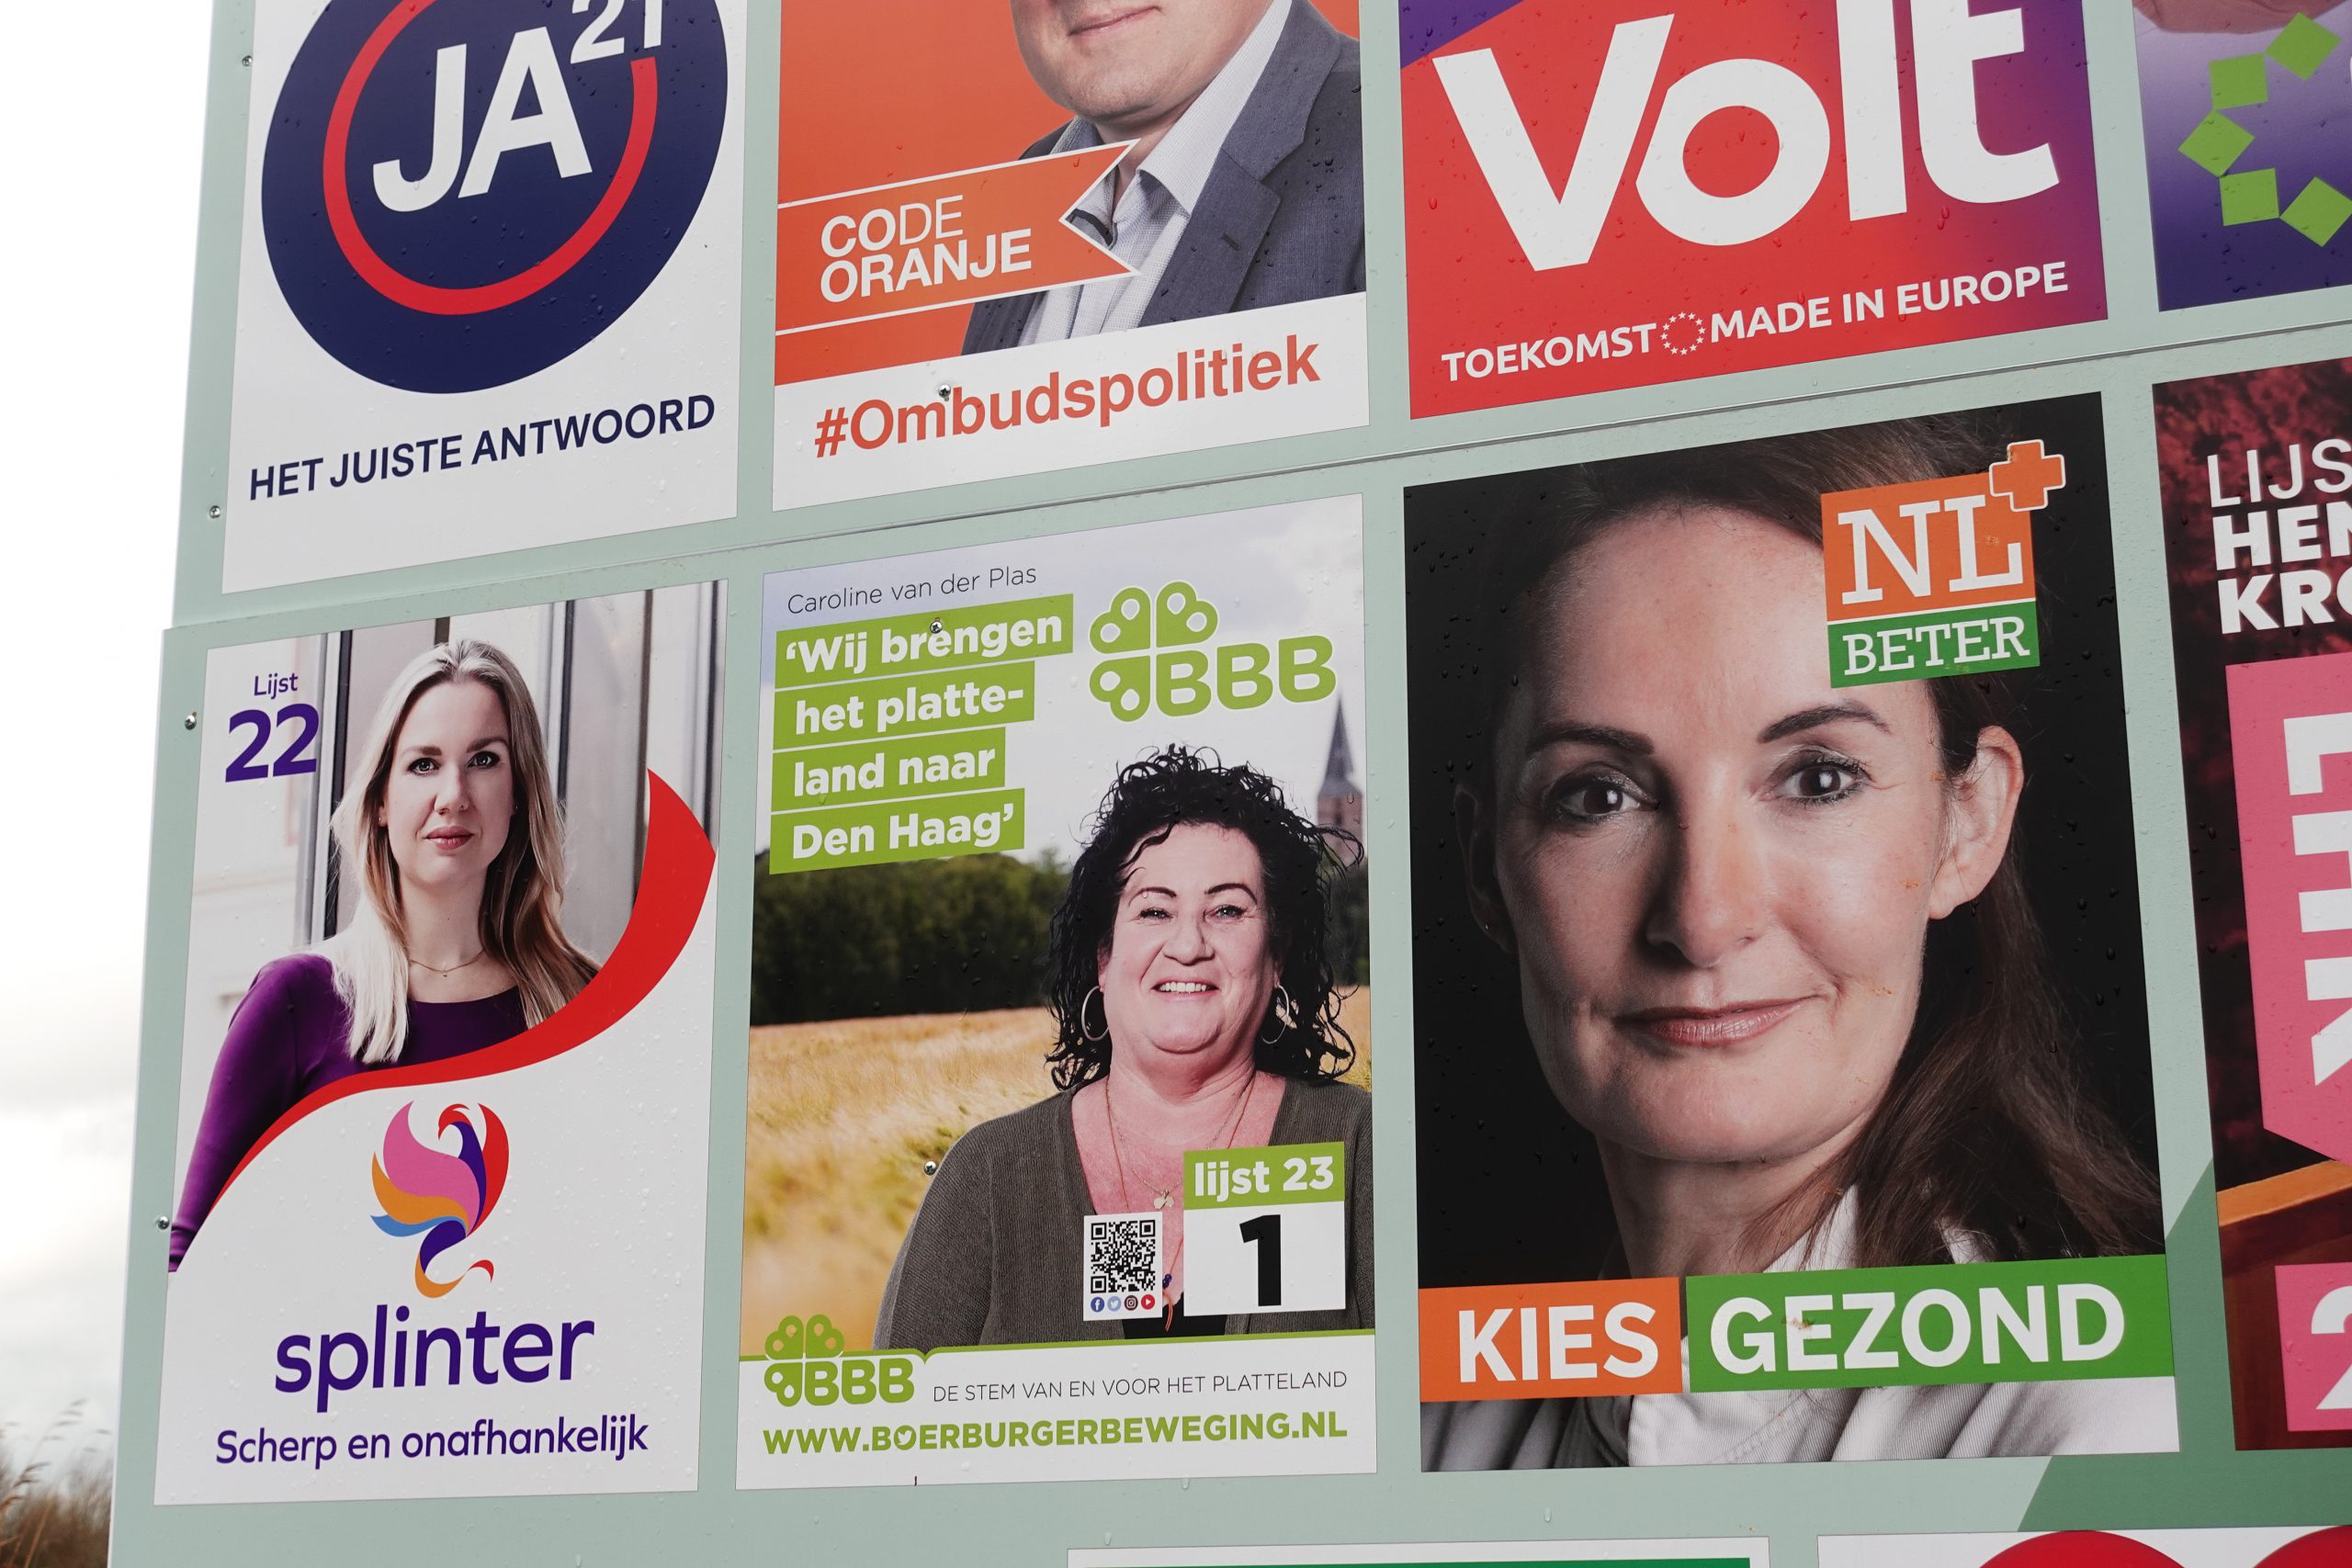 I&O-zetelpeiling 15 maart: VVD levert in, D66 stijgt door en nieuwe partijen maken kans